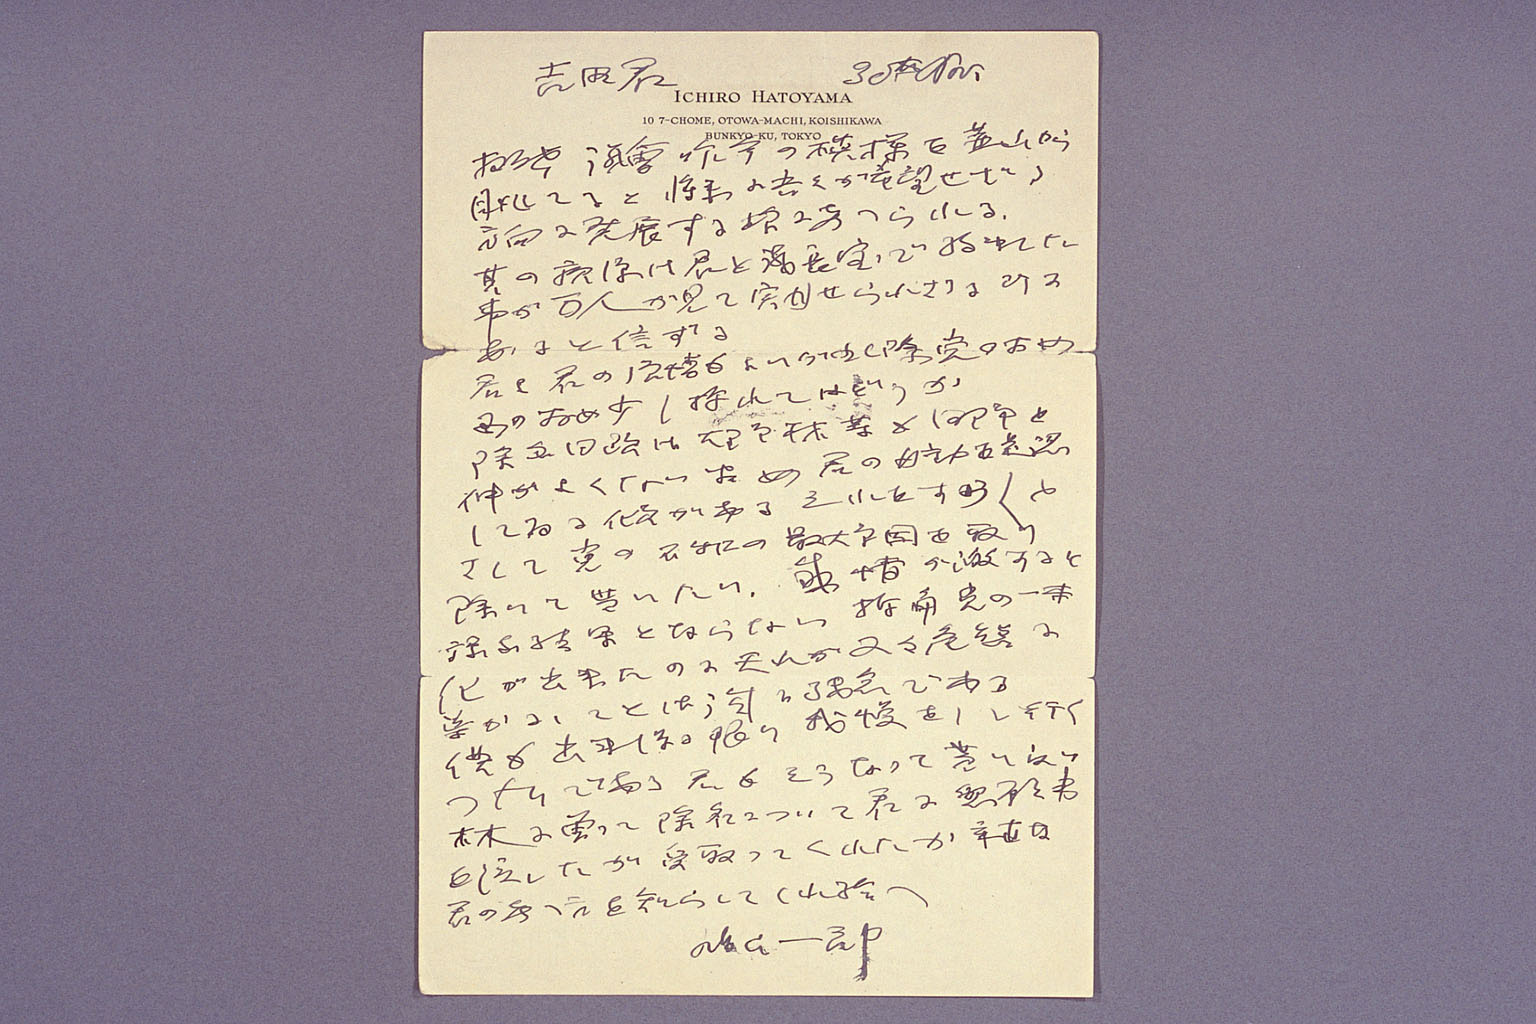 Letter from HATOYAMA Ichiro to YOSHIDA Shigeru (larger)